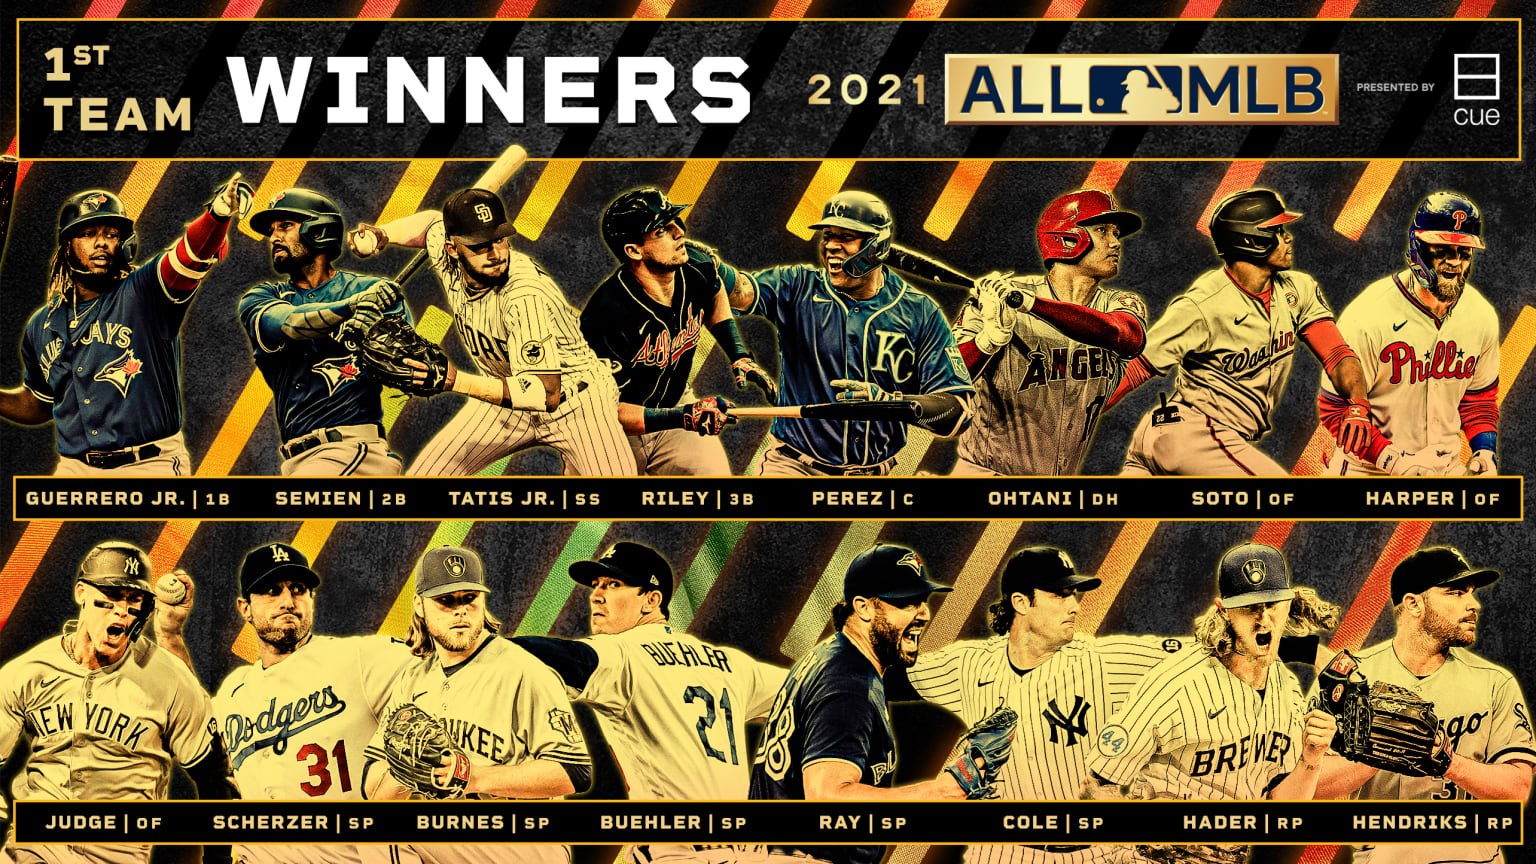 MLB awards season preview 2021